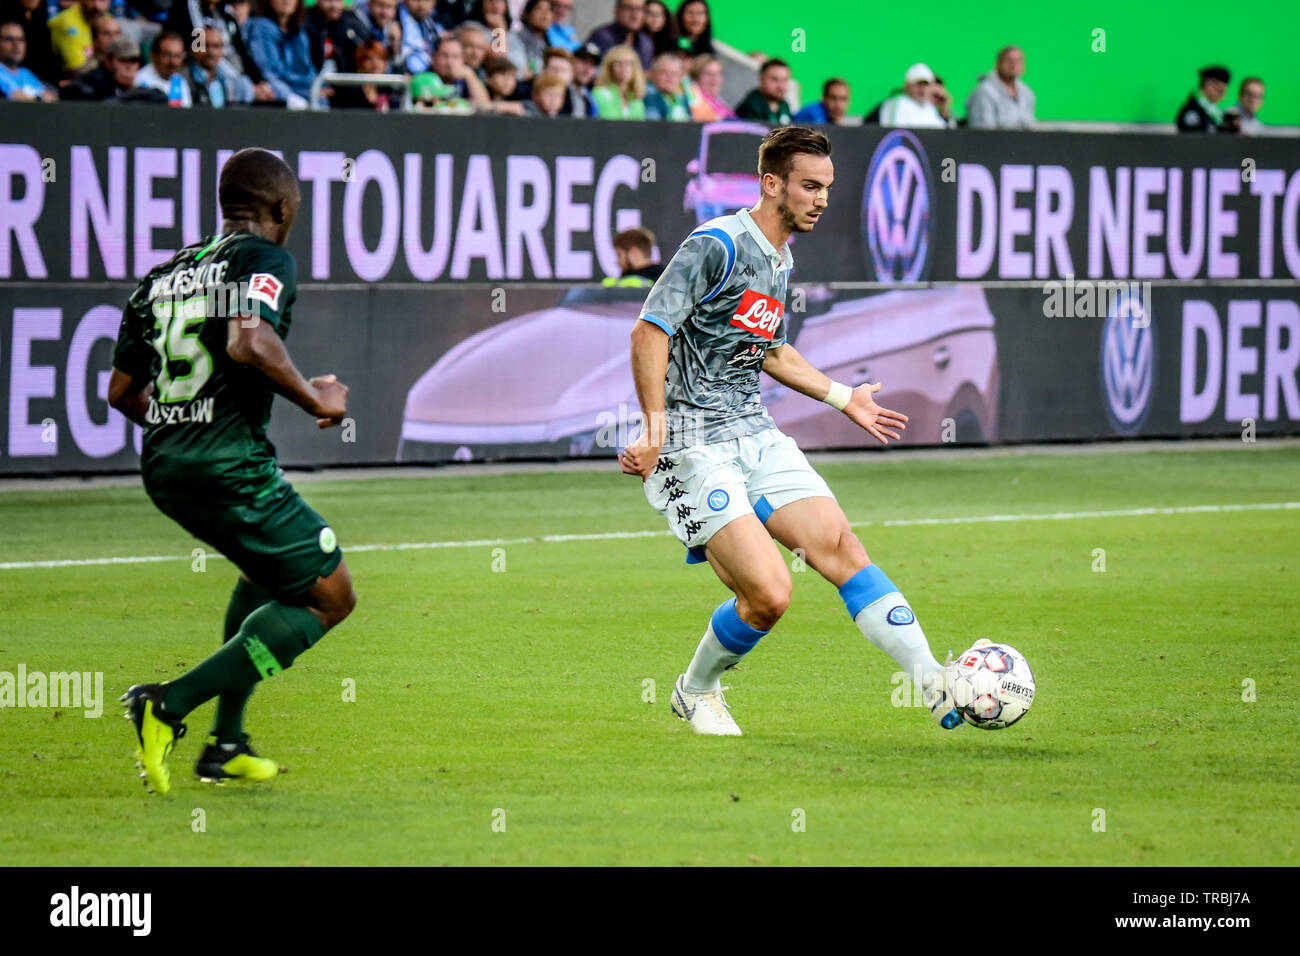 Wolfsburg, Allemagne, le 11 août 2018 : grand joueur de football Fabián Ruiz en action lors d'un match avec Napoli chemise. Photo par Michele Morrone. Banque D'Images